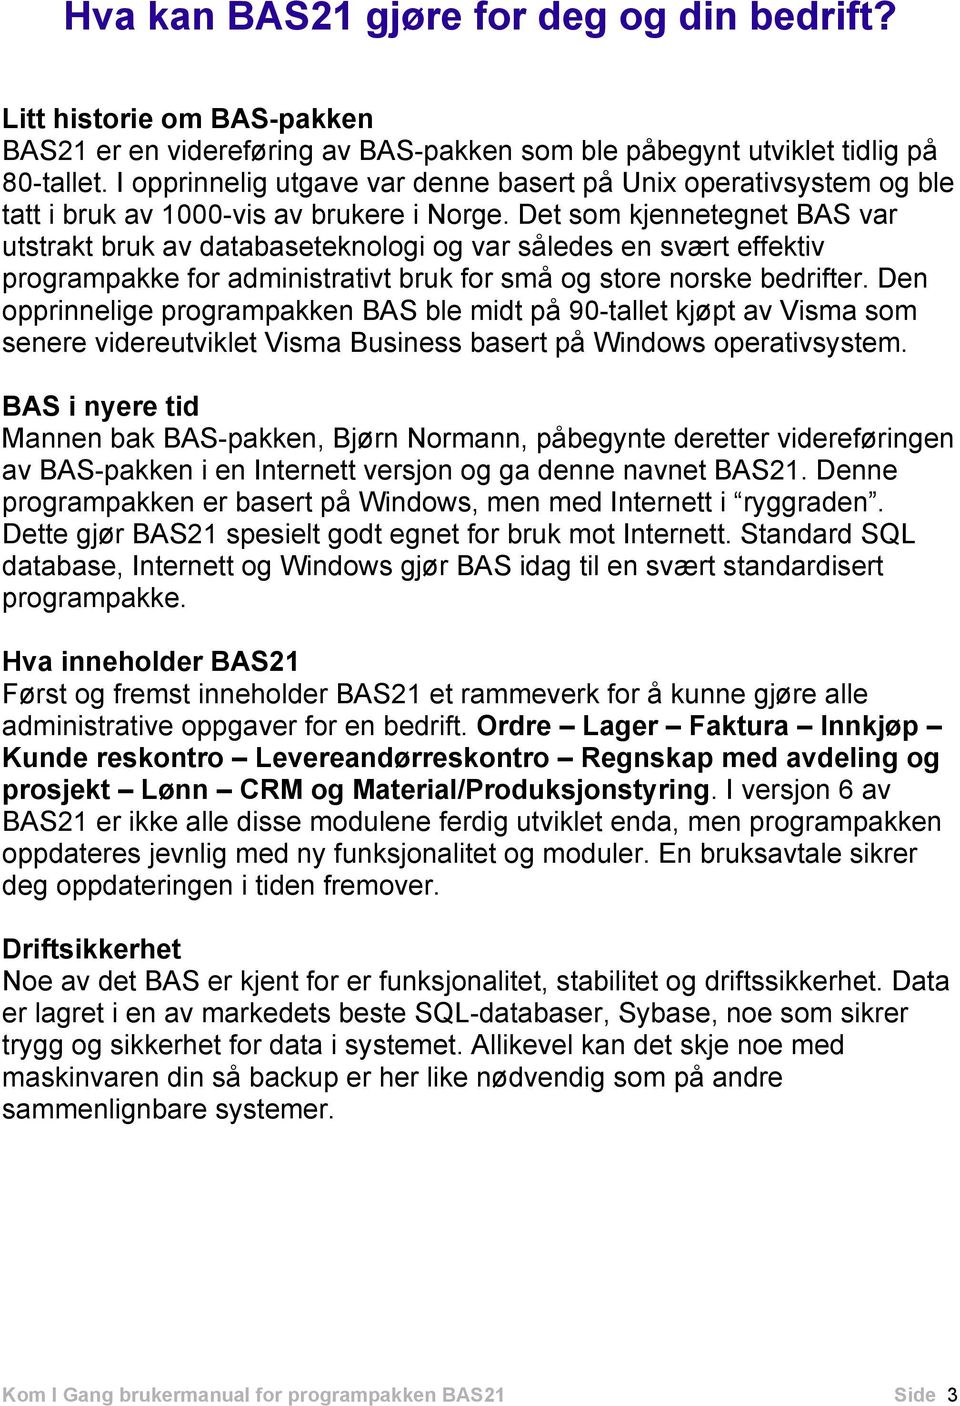 Det som kjennetegnet BAS var utstrakt bruk av databaseteknologi og var således en svært effektiv programpakke for administrativt bruk for små og store norske bedrifter.